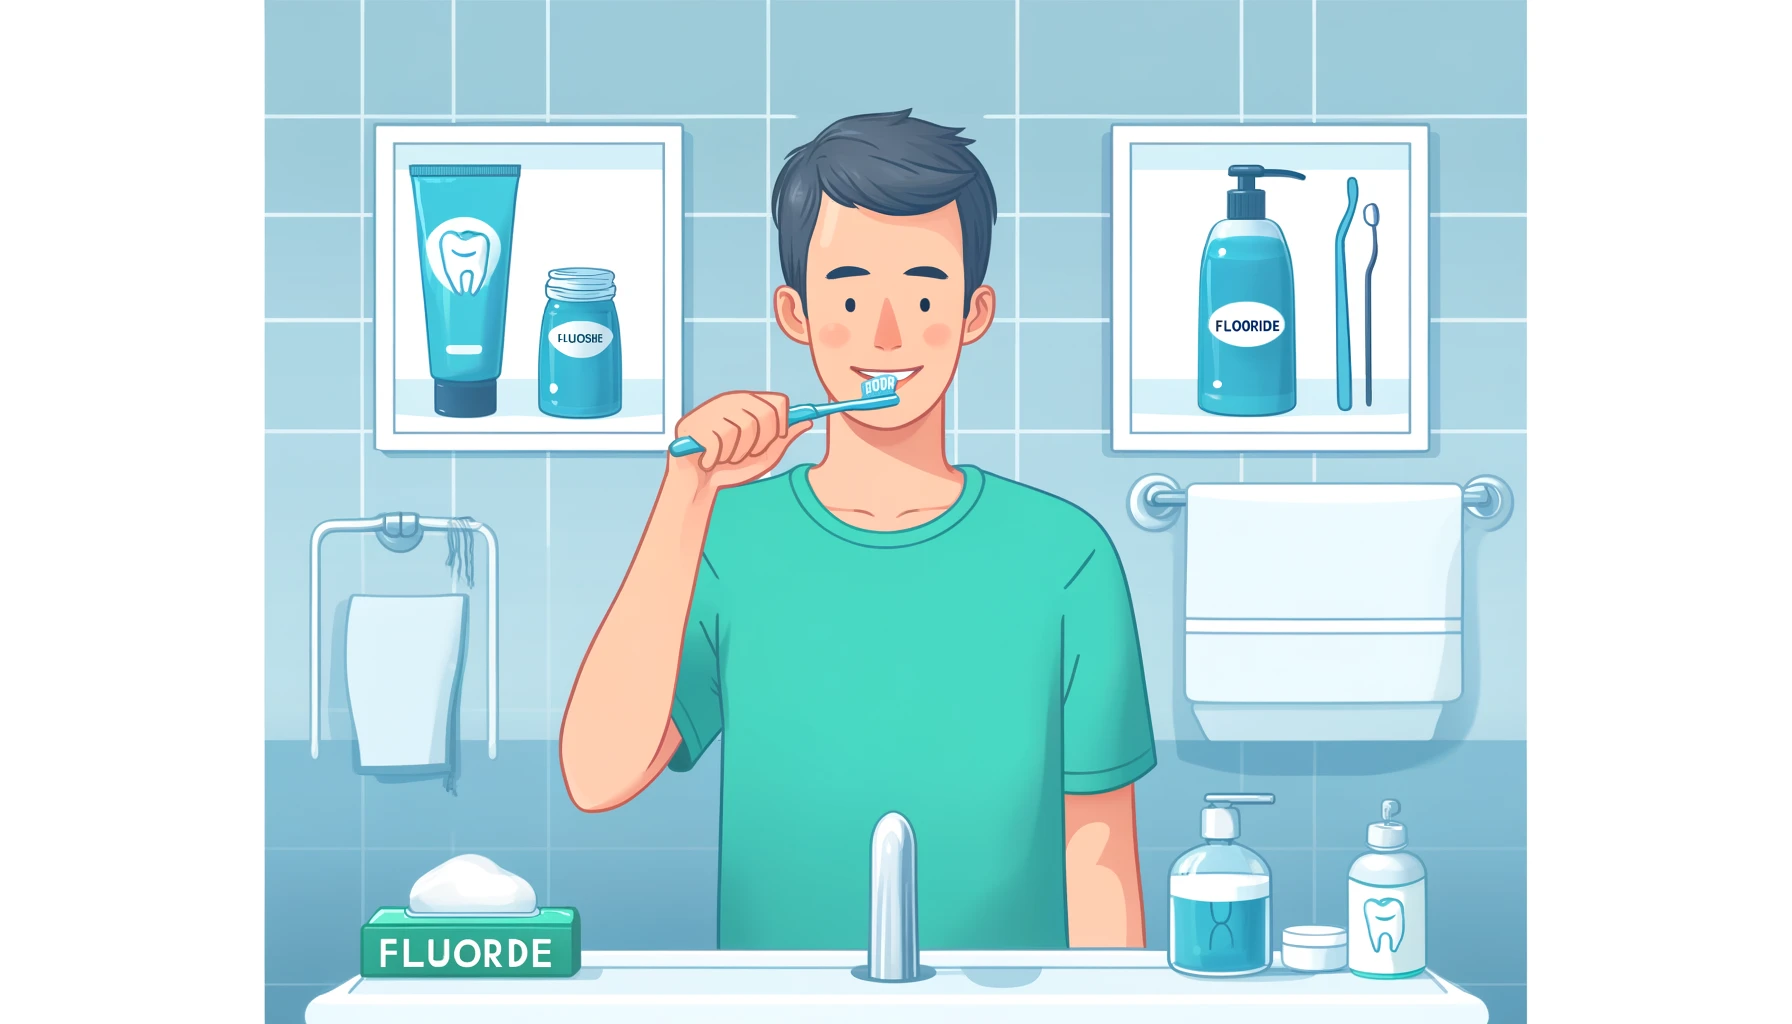 Illustrasjon som viser bruk av fluoridprodukter for tannhelse, inkludert tannpasta, munnvann og tanntråd årsaker til ising